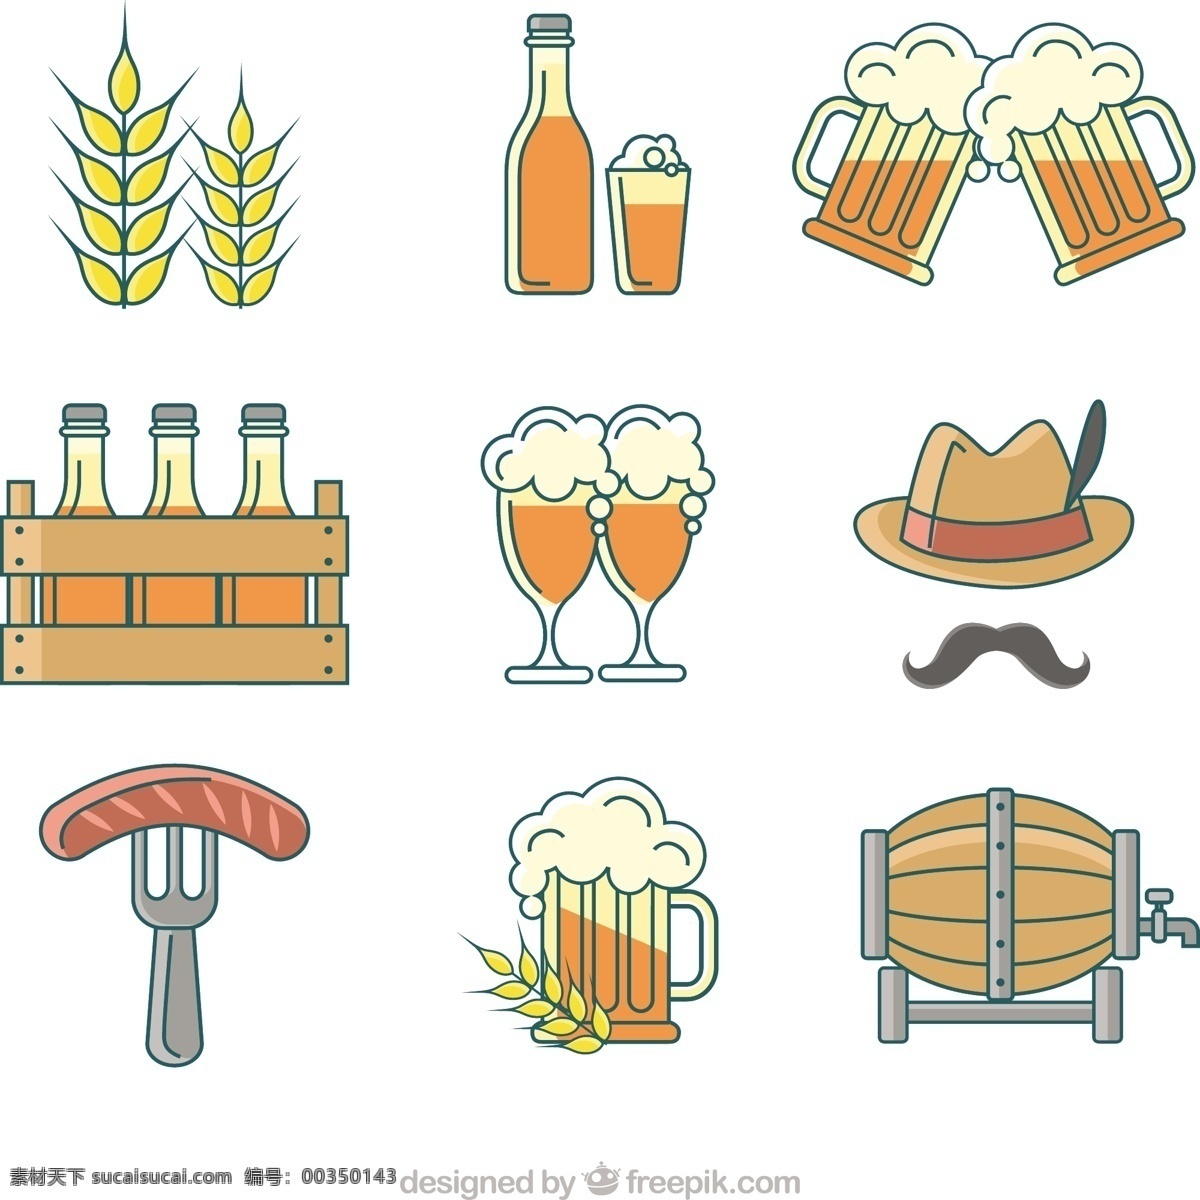 德国 啤酒 派对 元素 手工 手绘 秋季 庆典 七彩 节日 酒瓶 平板 吧台 小麦 玻璃杯 饮料 帽子 画 平面设计 趣味